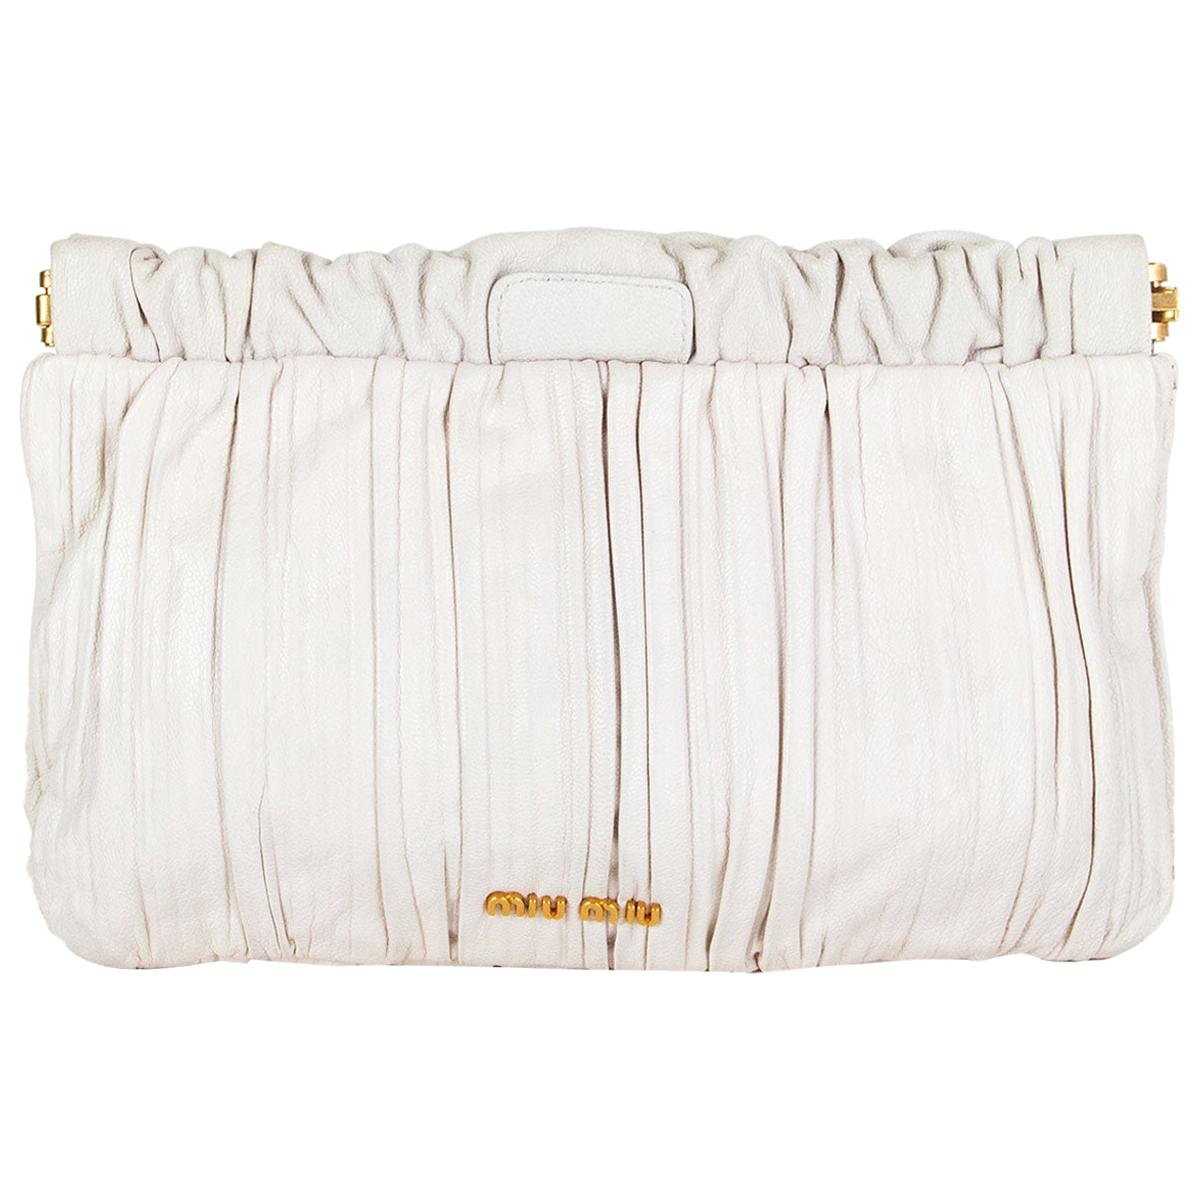 MIU MIU white leather Pleated Clutch Bag